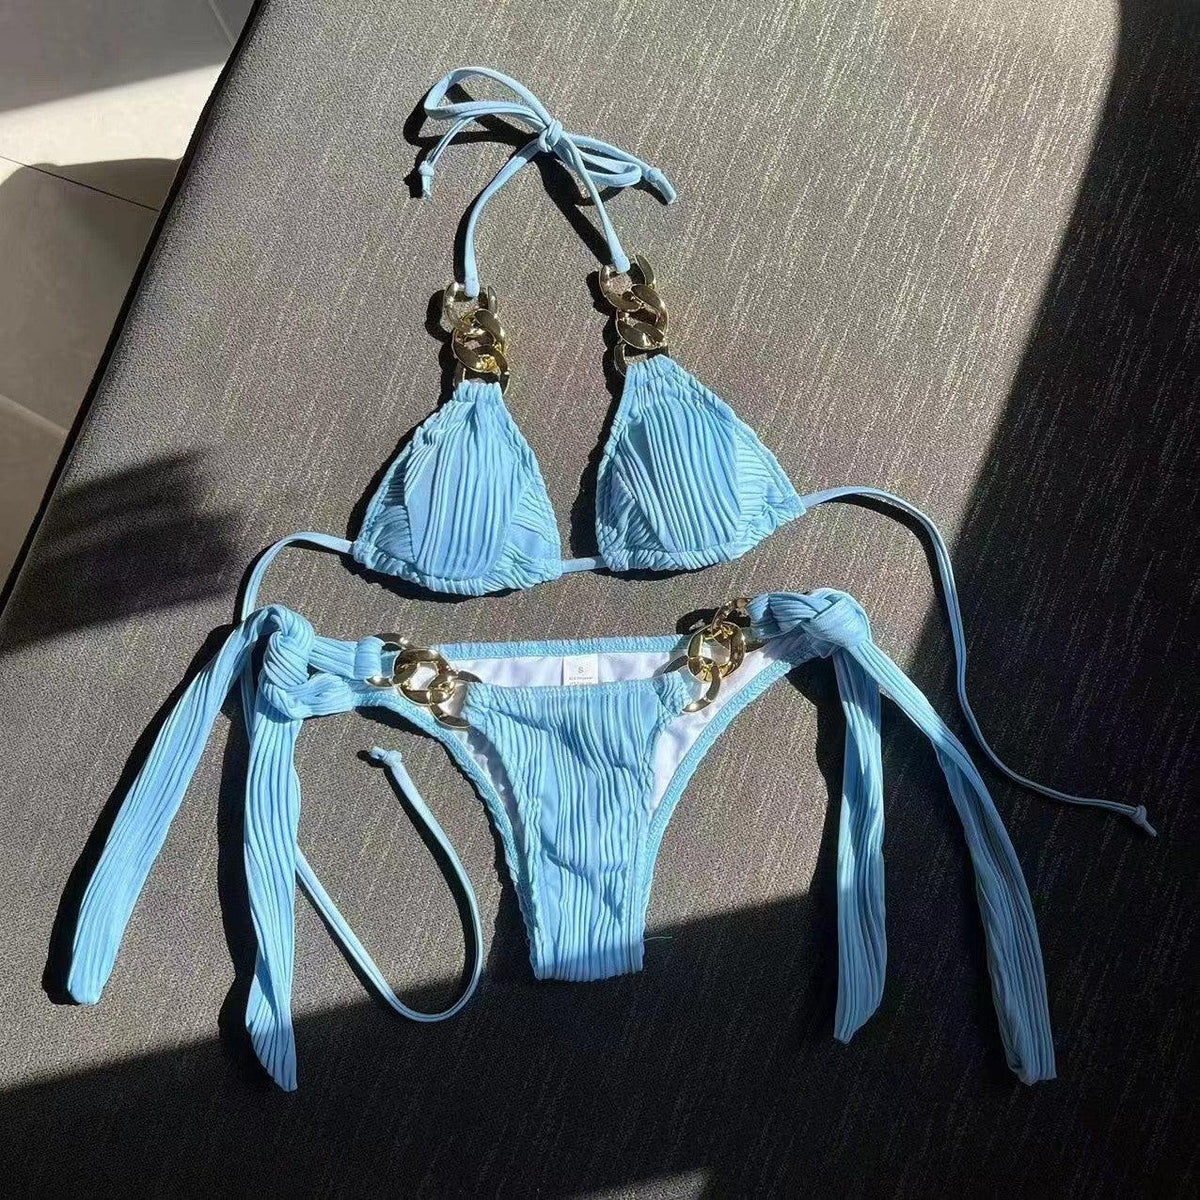 GFIT Sexy Chain Bikini Set - Women's Swimwear - GFIT SPORTS